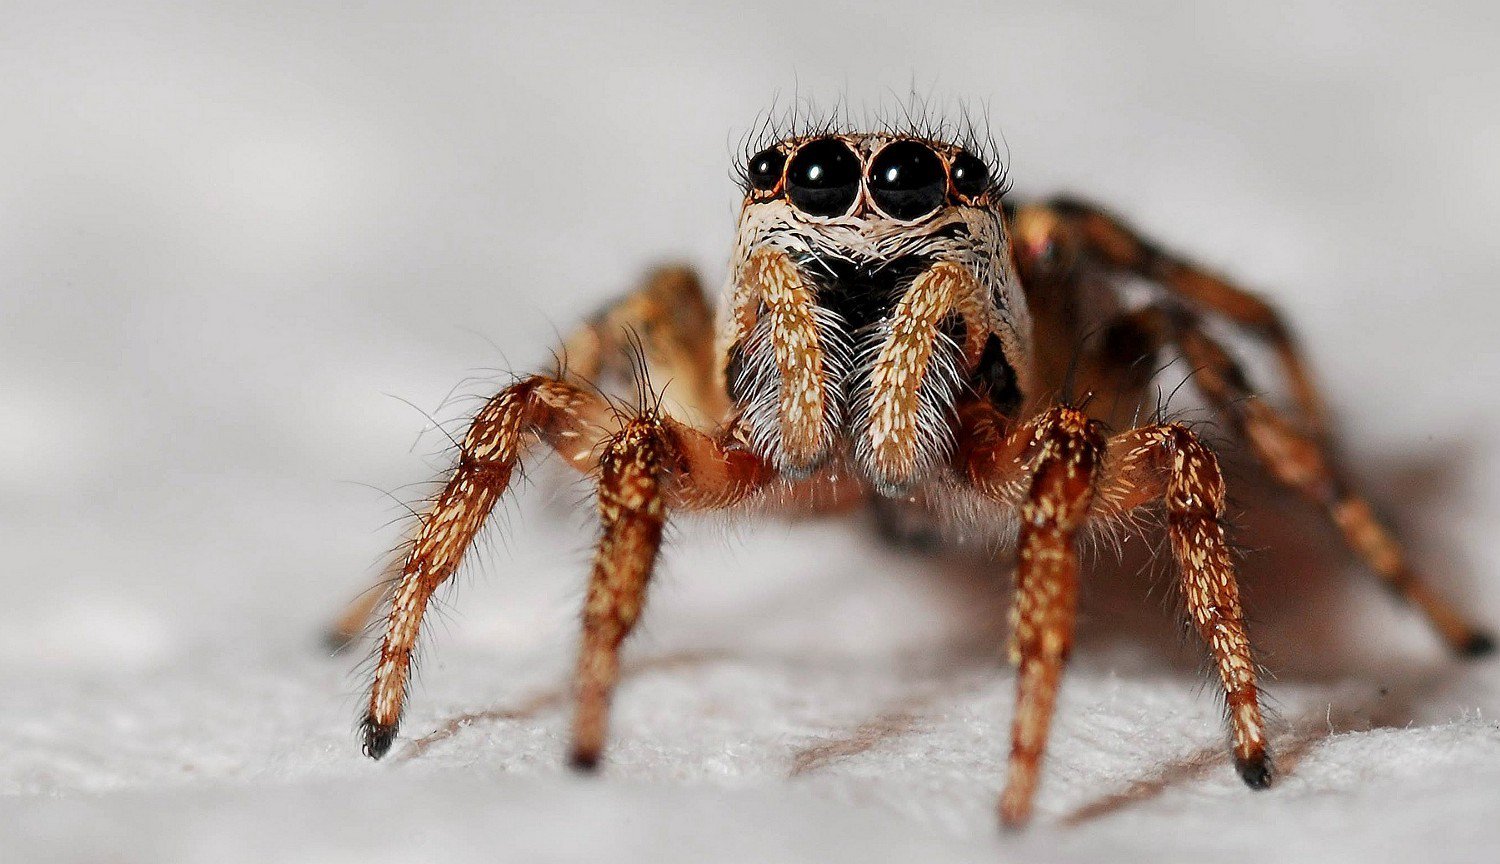 Foresta örümcek bilir parlayan gözleri, hatta milyonlarca yıl sonra